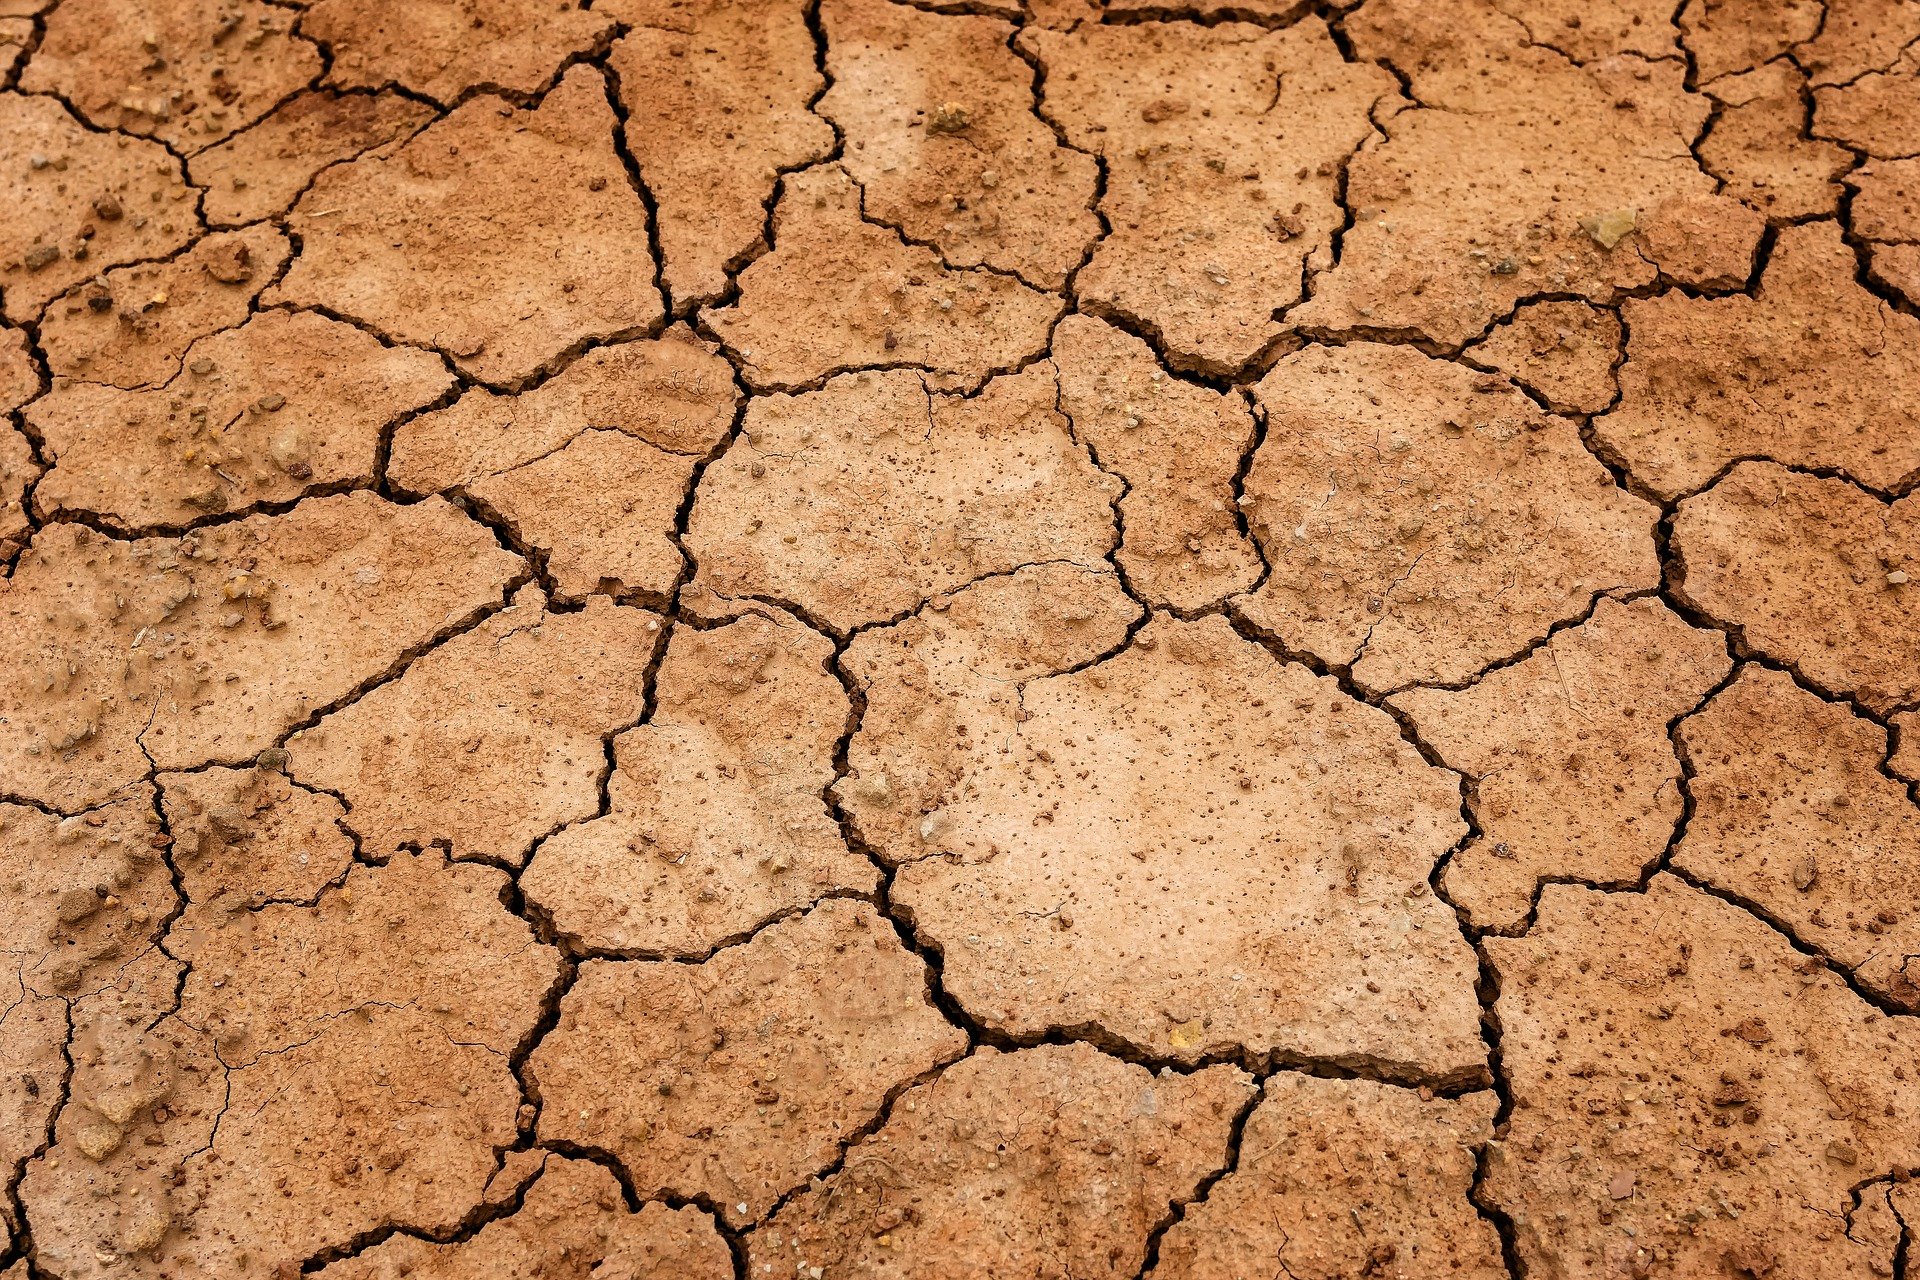 가뭄, 물부족, 기상재해